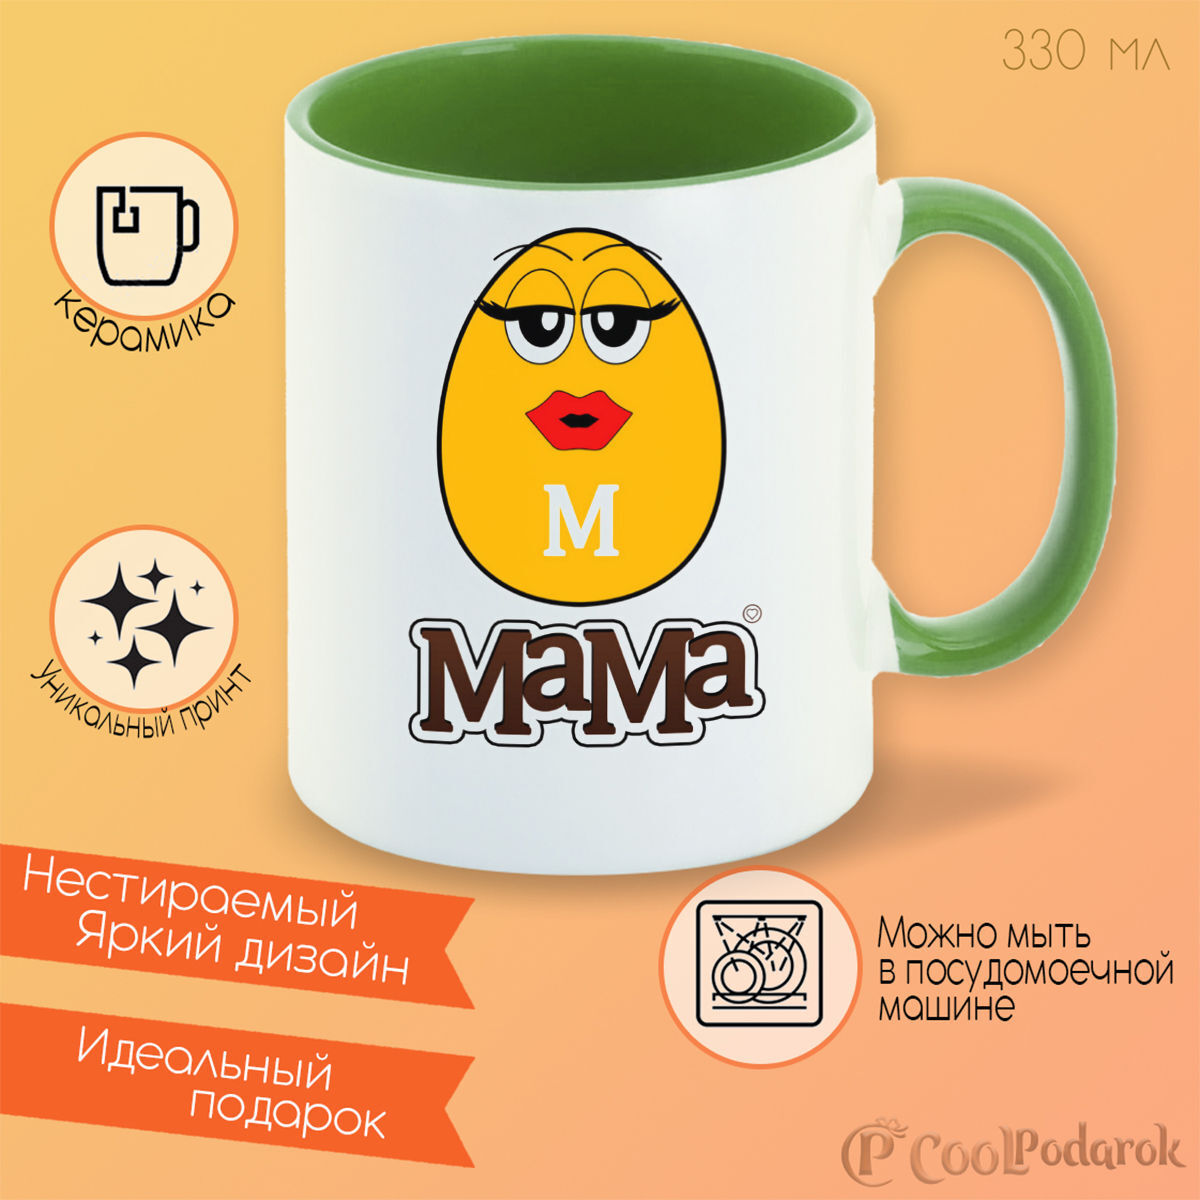 Мс мама. Кружка MANDMS. M&M Mug CN.